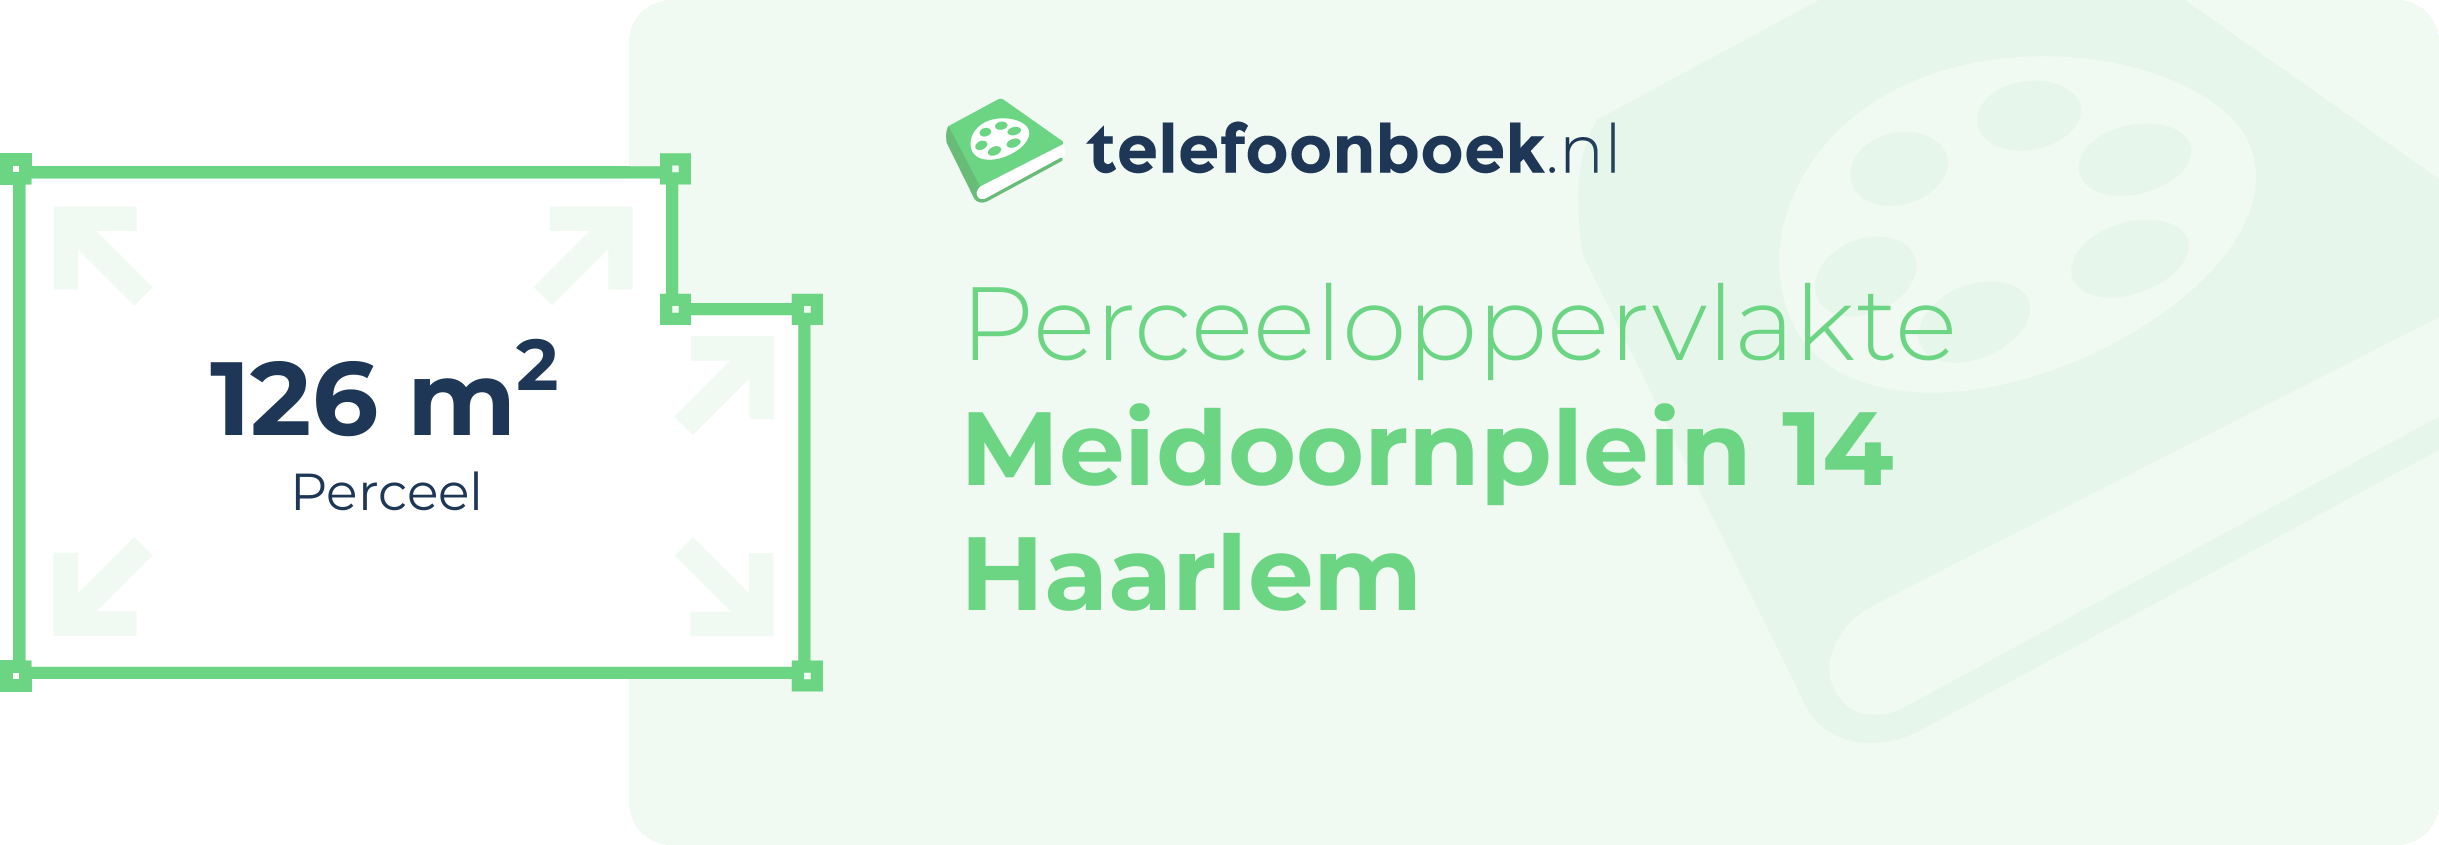 Perceeloppervlakte Meidoornplein 14 Haarlem